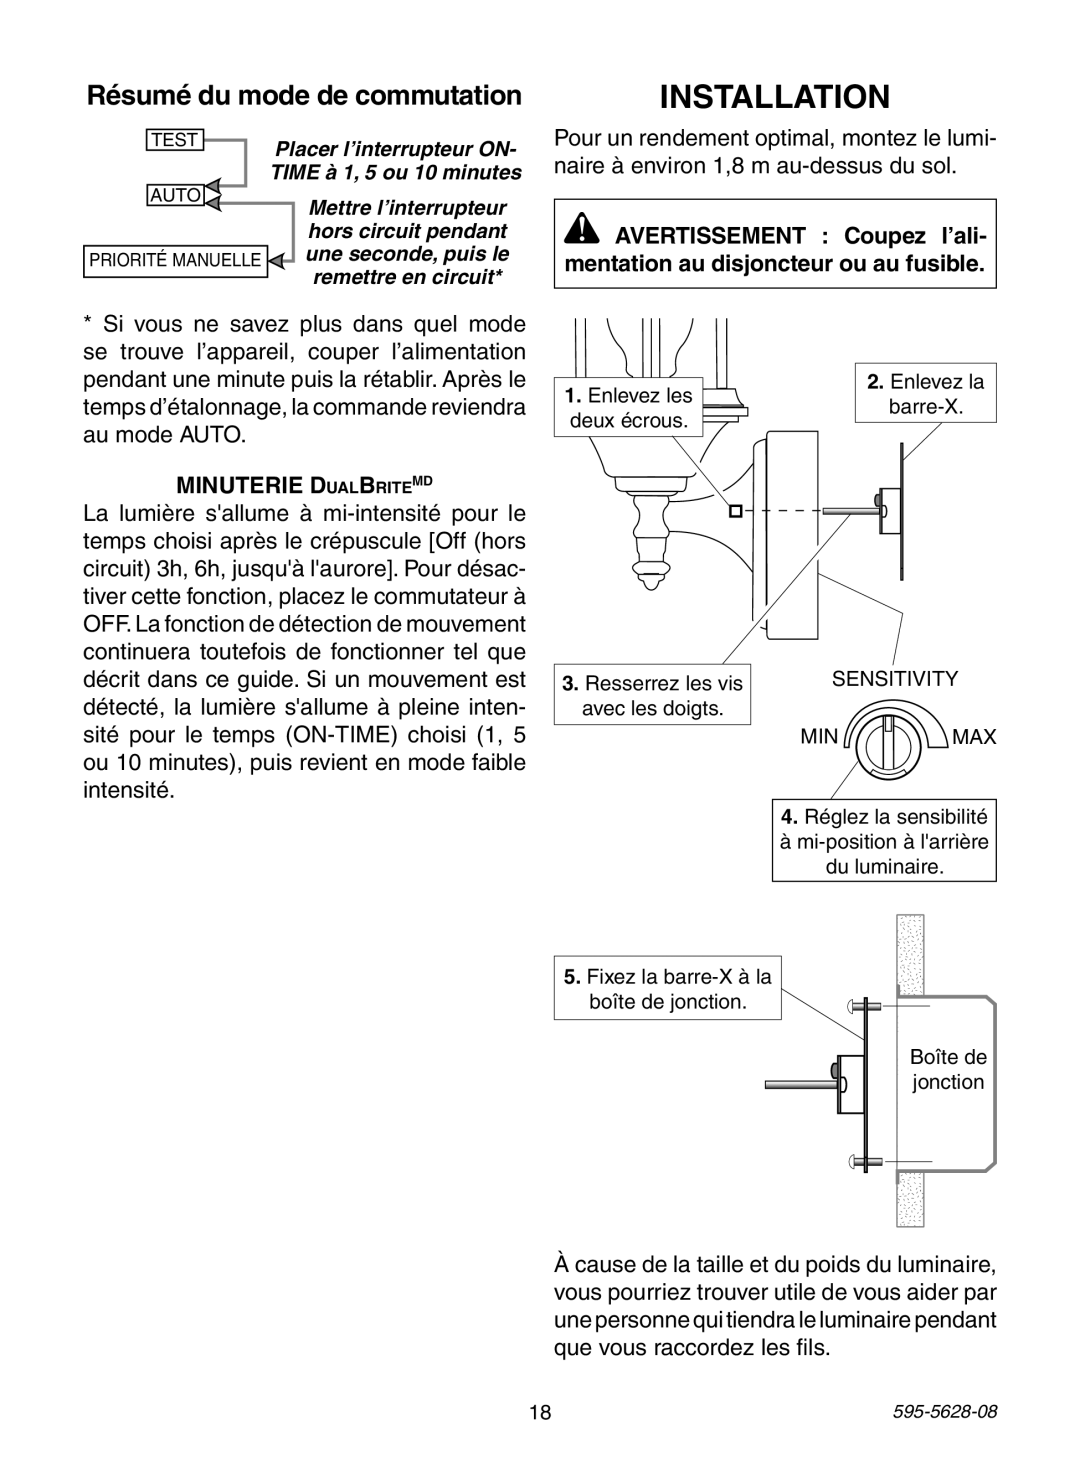 Heath Zenith SL-4190 Series manual Résumé du mode de commutation, Minuterie DualBriteMD, Installation 